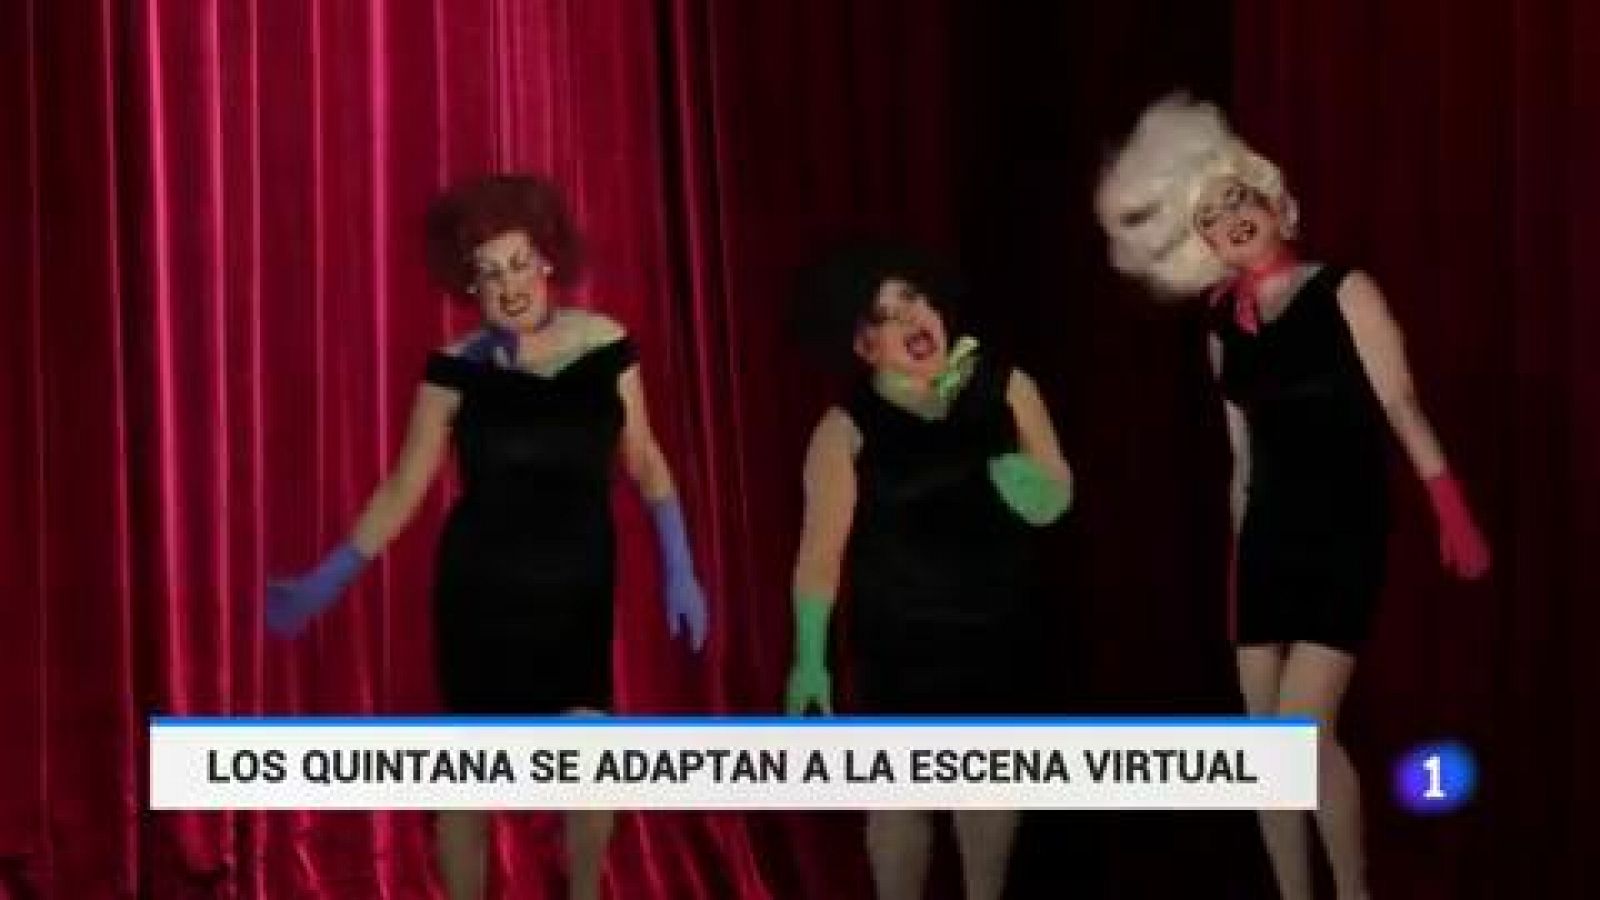 Los Quintana se reinventan tras la crisis del coronavirus - RTVE.es